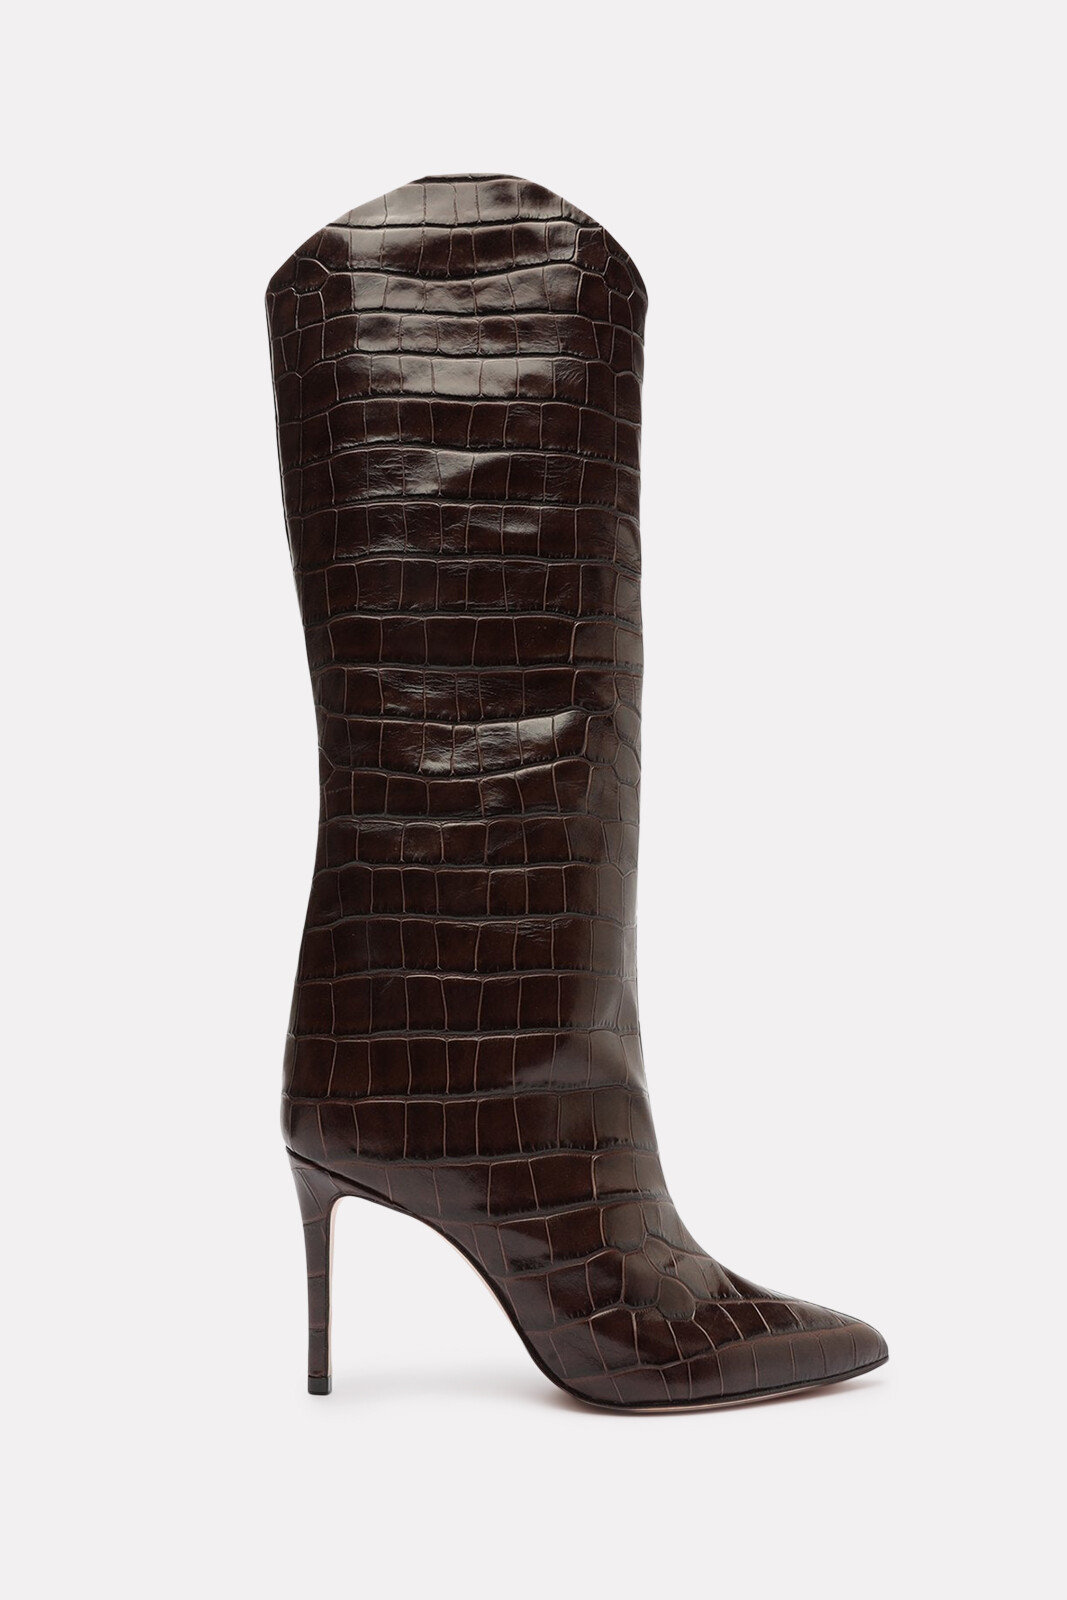 Schutz Maryana Crocodile-Embossed Leather Boot